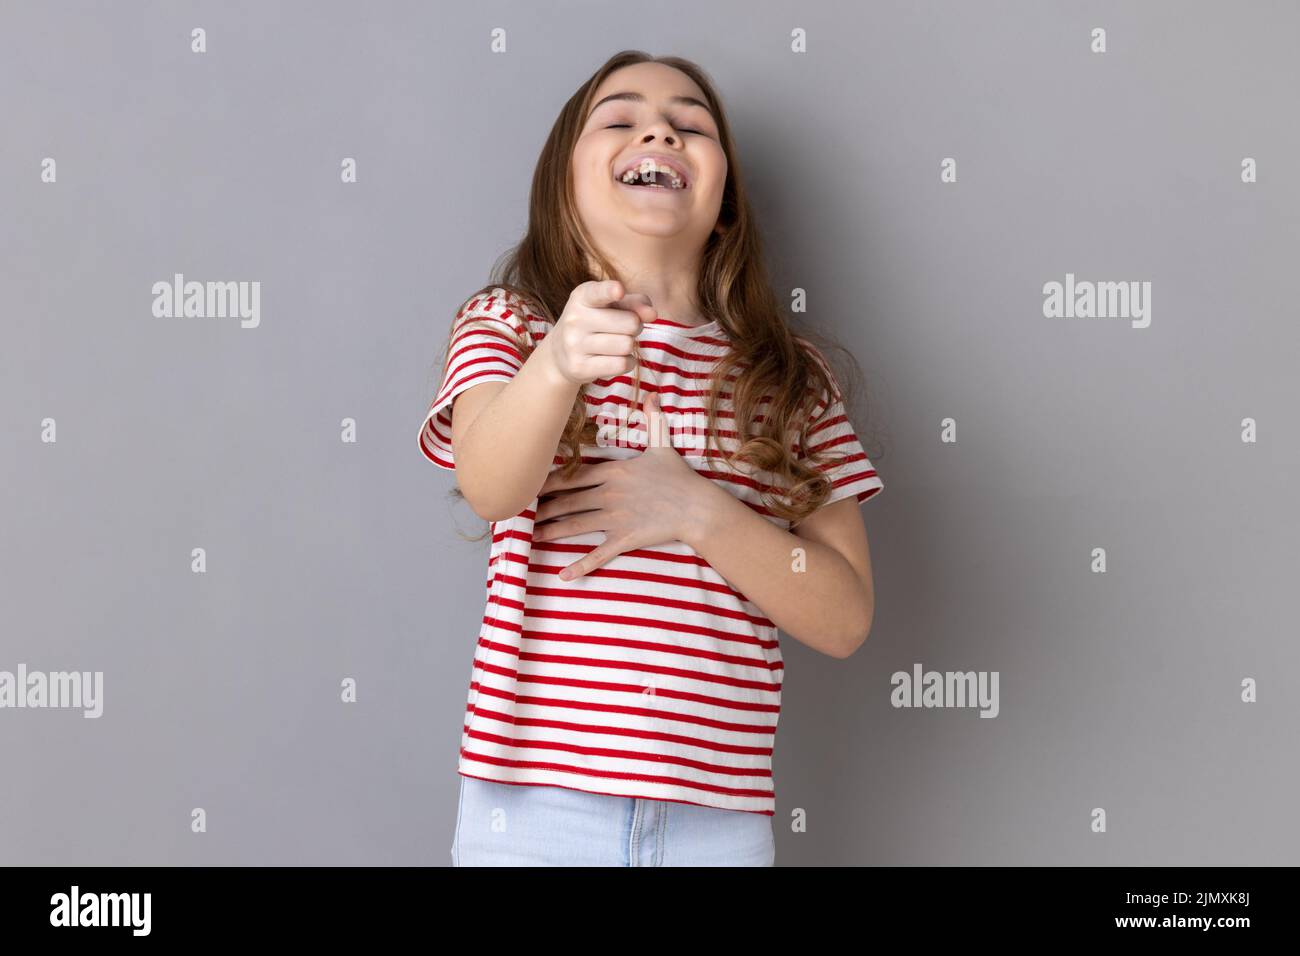 Retrato de niña que llevaba una camiseta a rayas riendo, sosteniendo el estómago y señalando a la cámara, burlándose de ti, no puede detener la risa histérica. Estudio de interior grabado aislado sobre fondo gris. Foto de stock